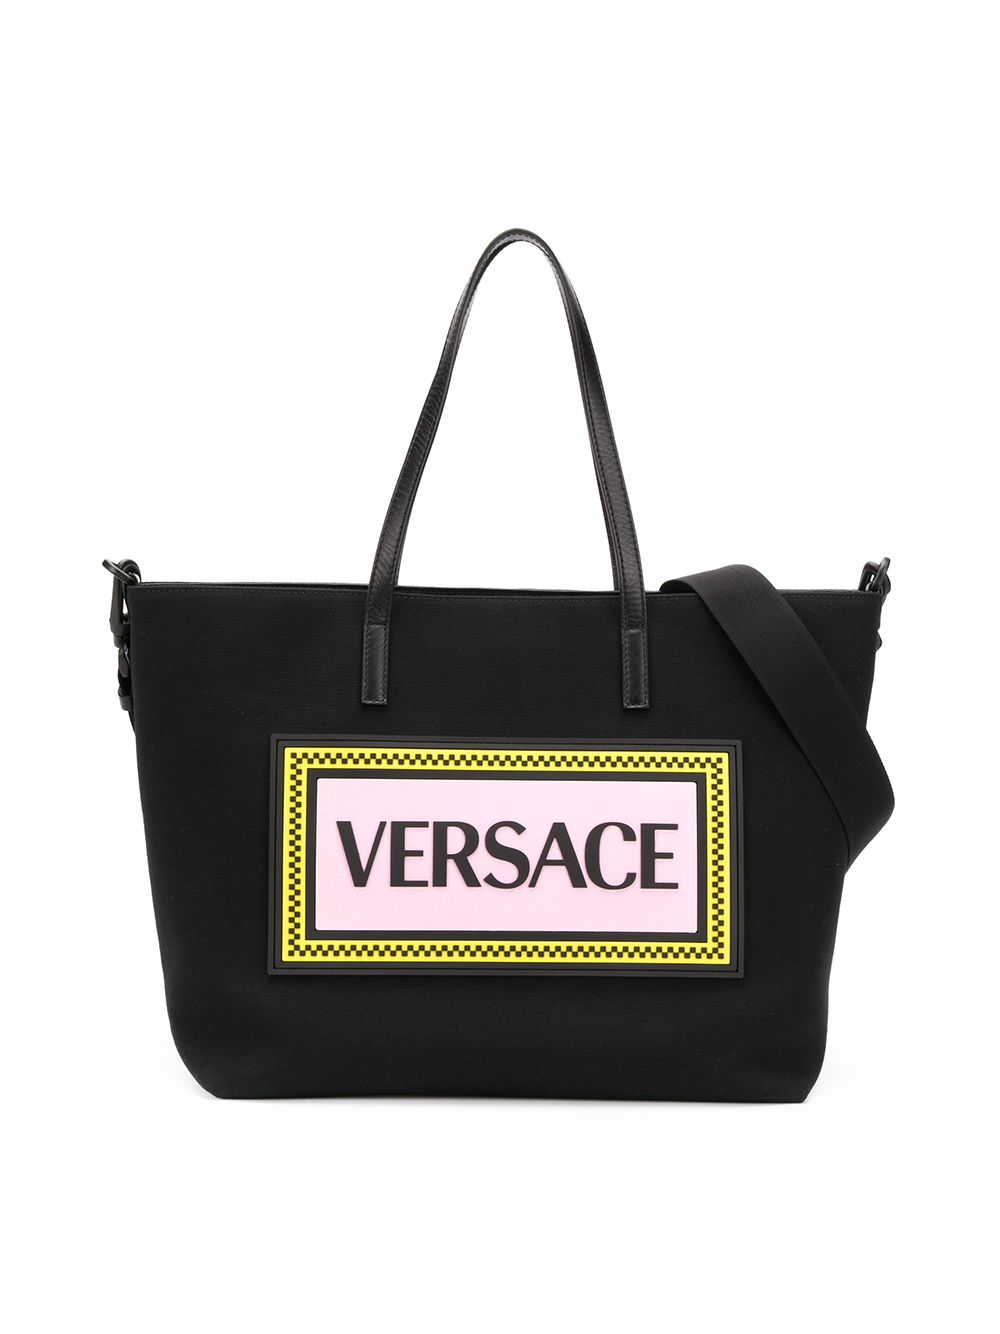 фото Young versace пеленальная сумка с логотипом